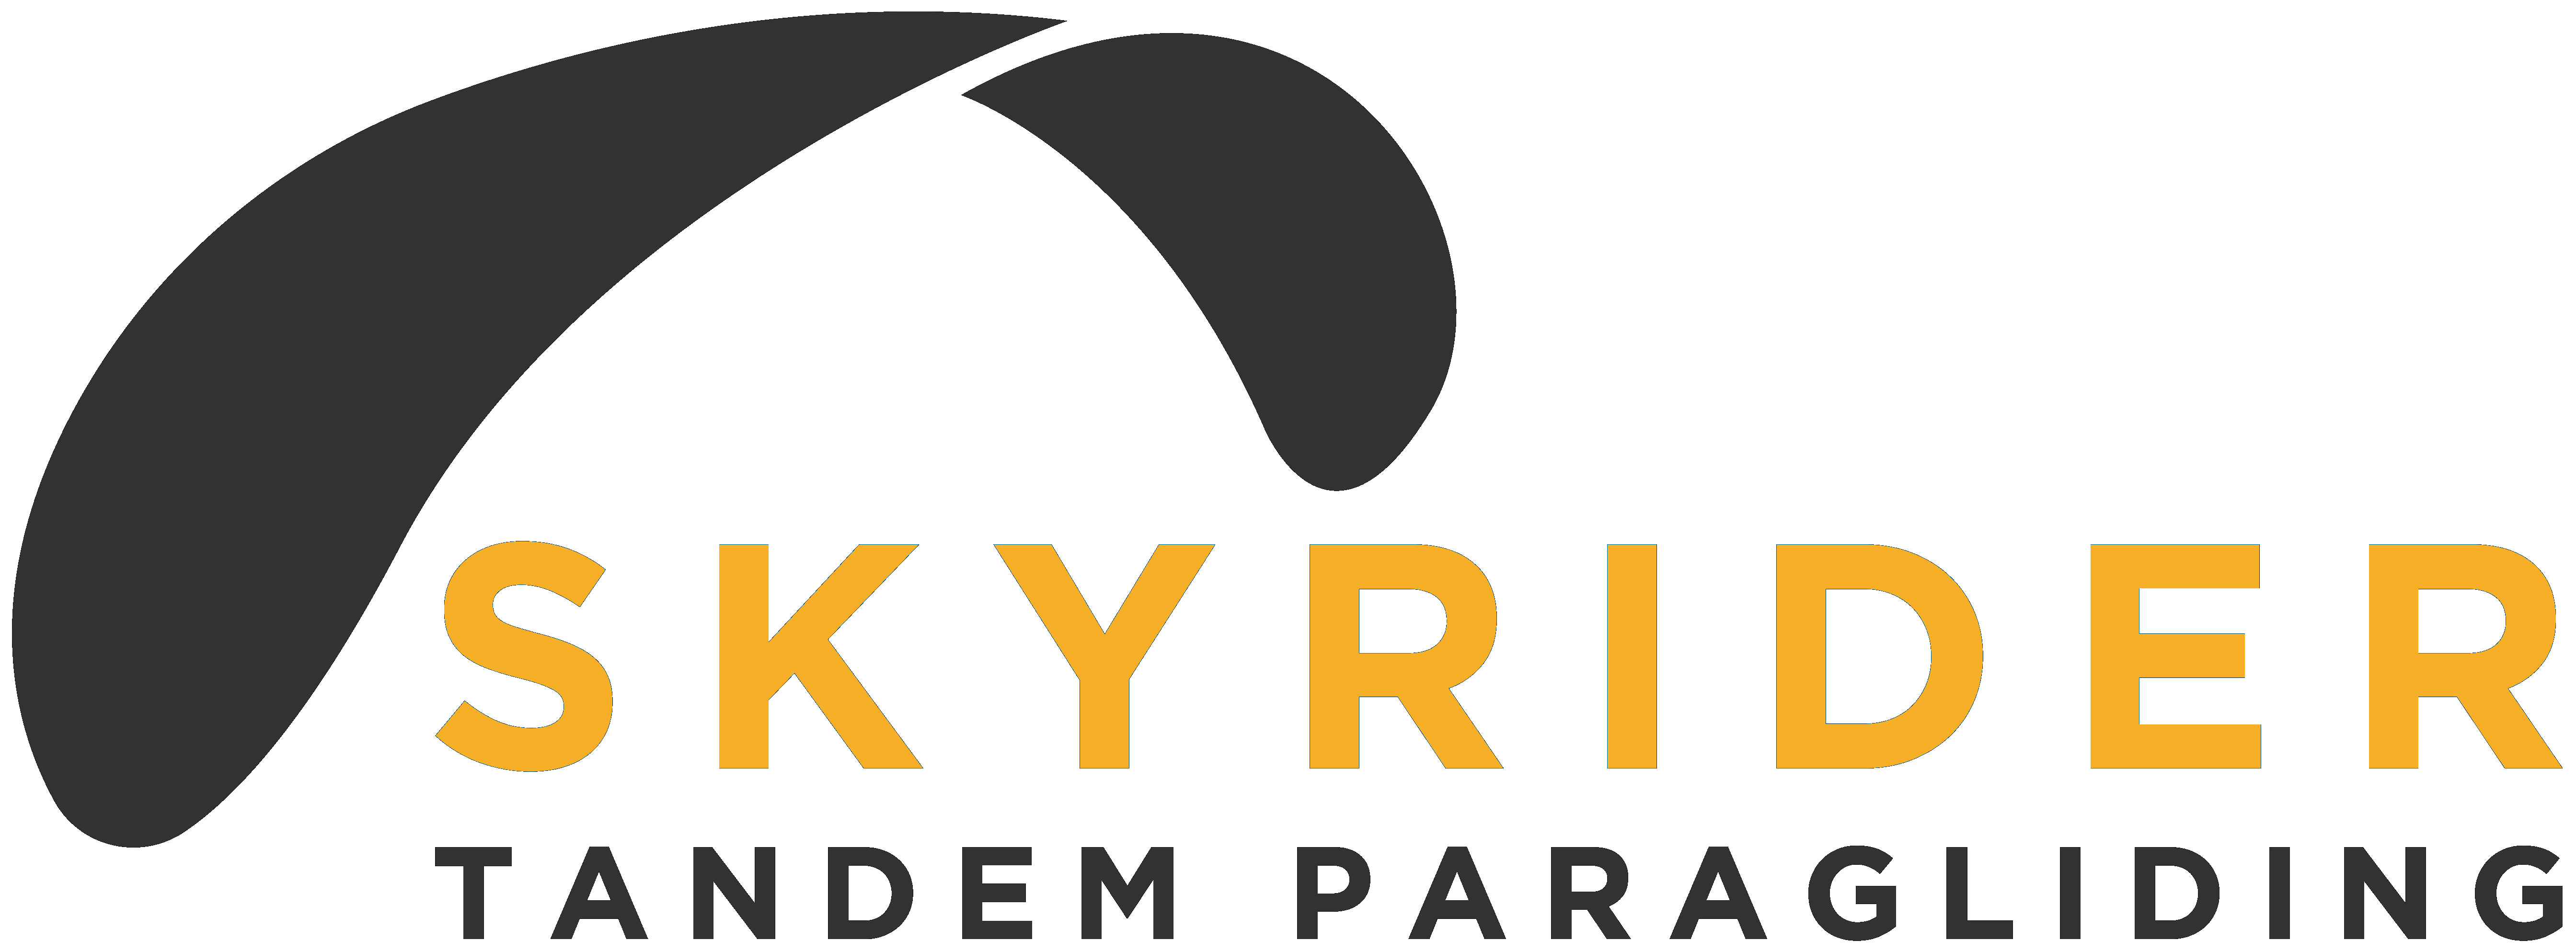 Skyrider Tandem Paragliding Logo